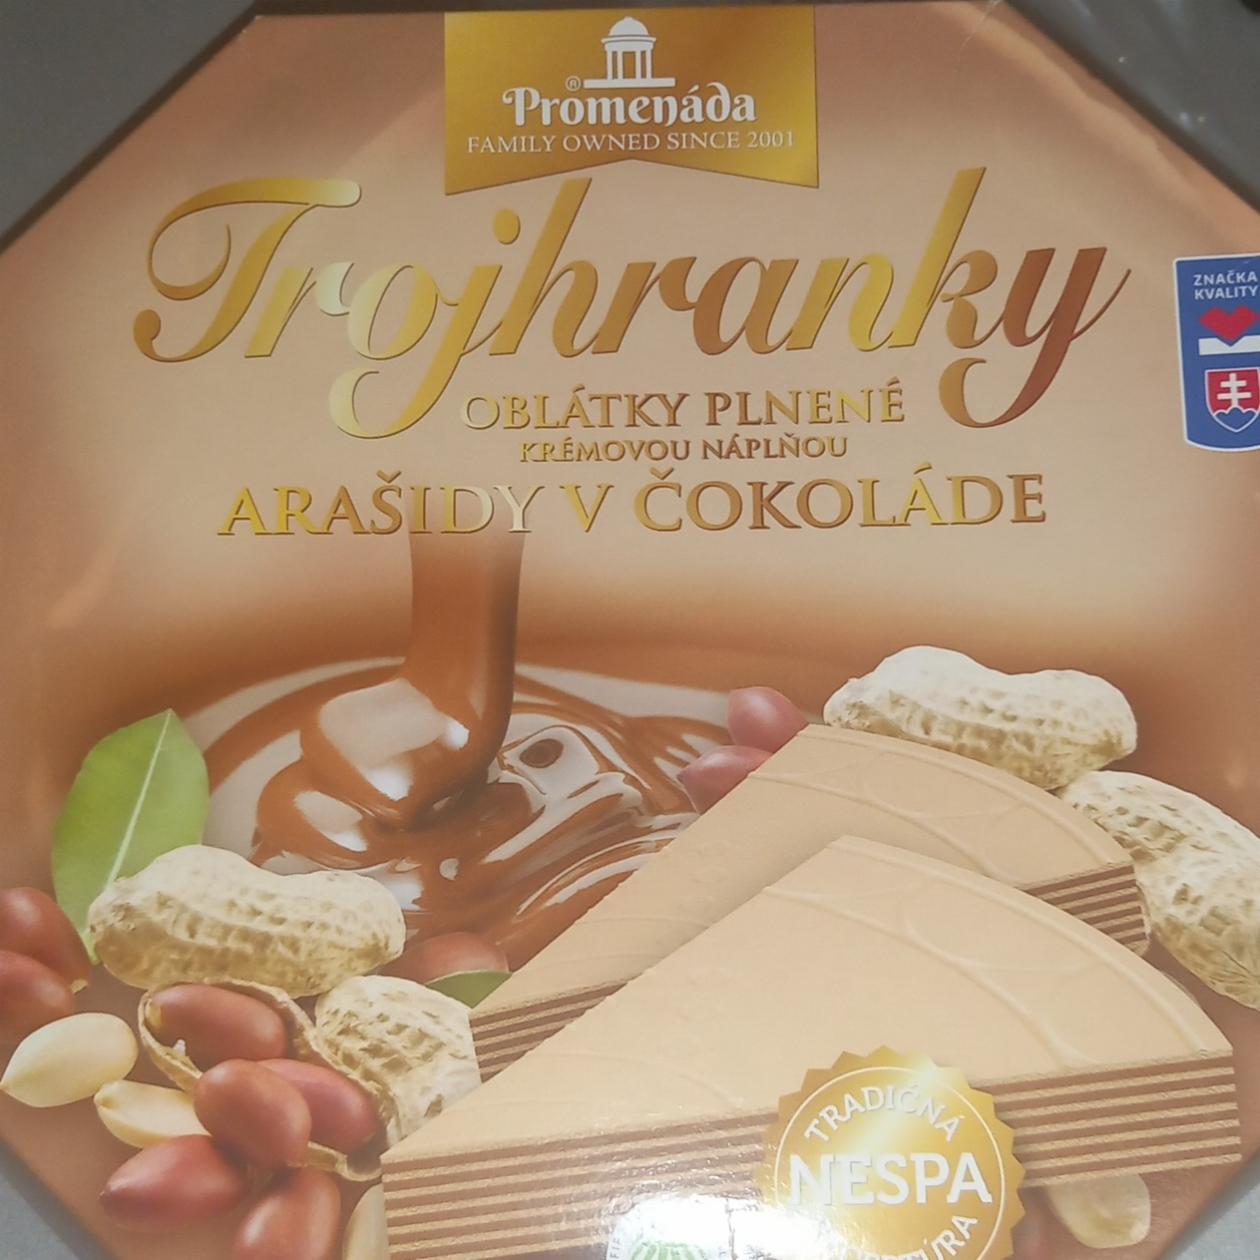 Fotografie - Trojhranky oblátky plnené krémovou náplňou arašidy v čokoláde Promenáda